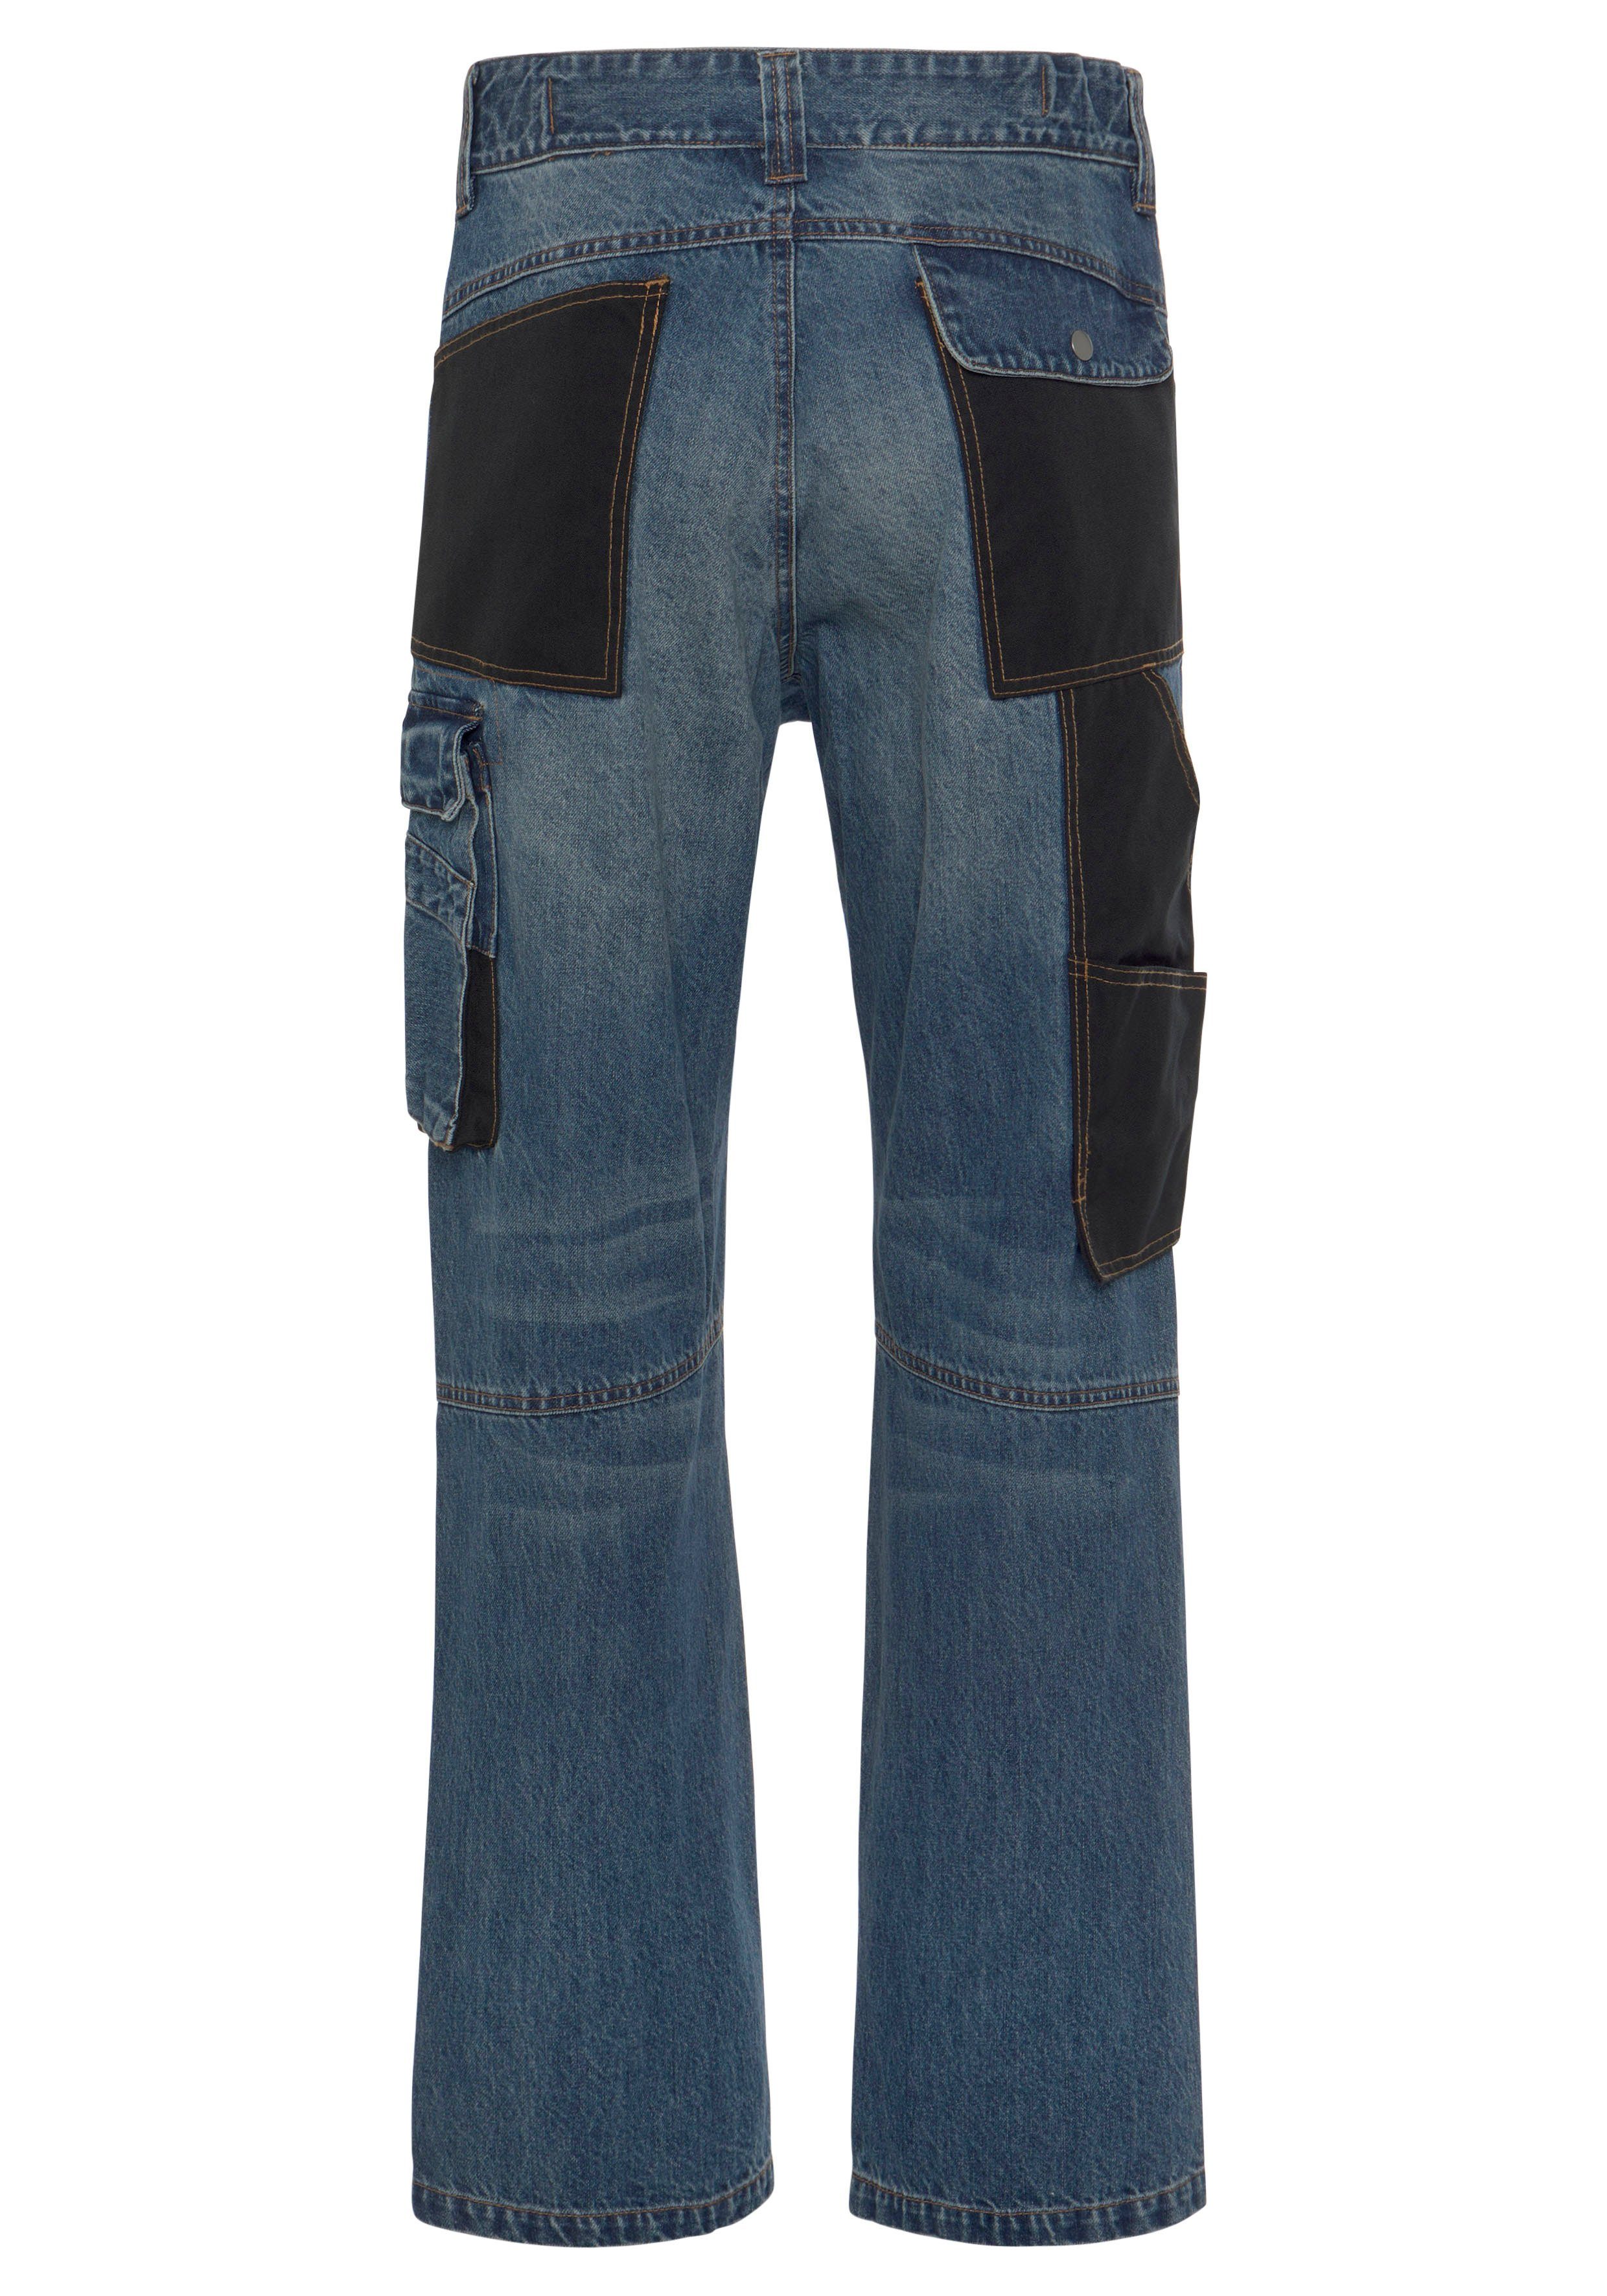 Northern Country Jeansstoff, (aus aus mit fit) Taschen, Cordura Arbeitshose dehnbarem Bund, comfort Jeans 9 Baumwolle, robuster Knieverstärkung praktischen 100% Multipocket